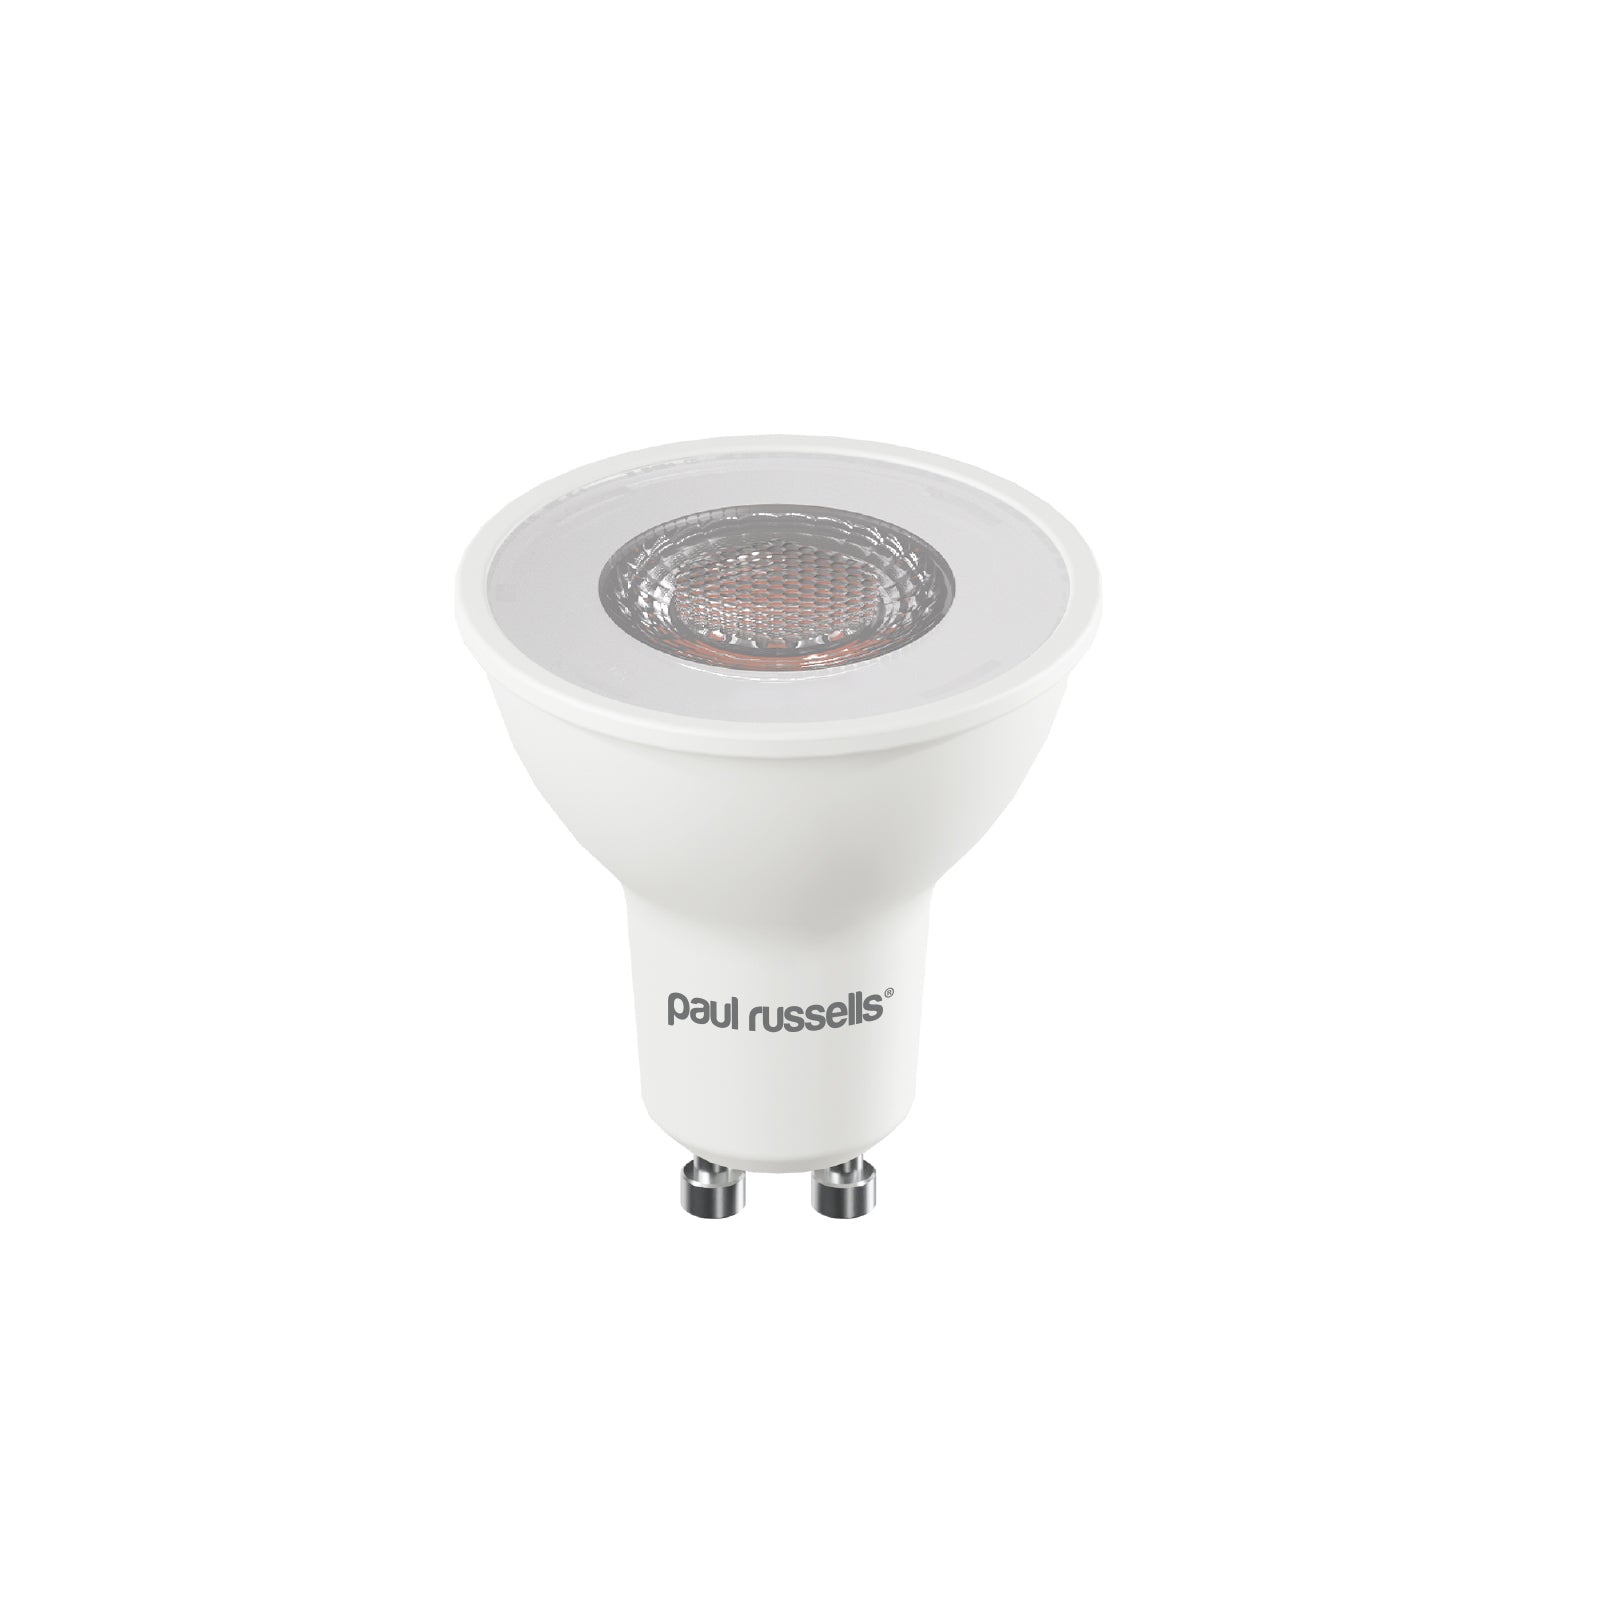 LED Spotlight 7W (75w), GU10, 560 Lumens, Warm White(2700K), 240V